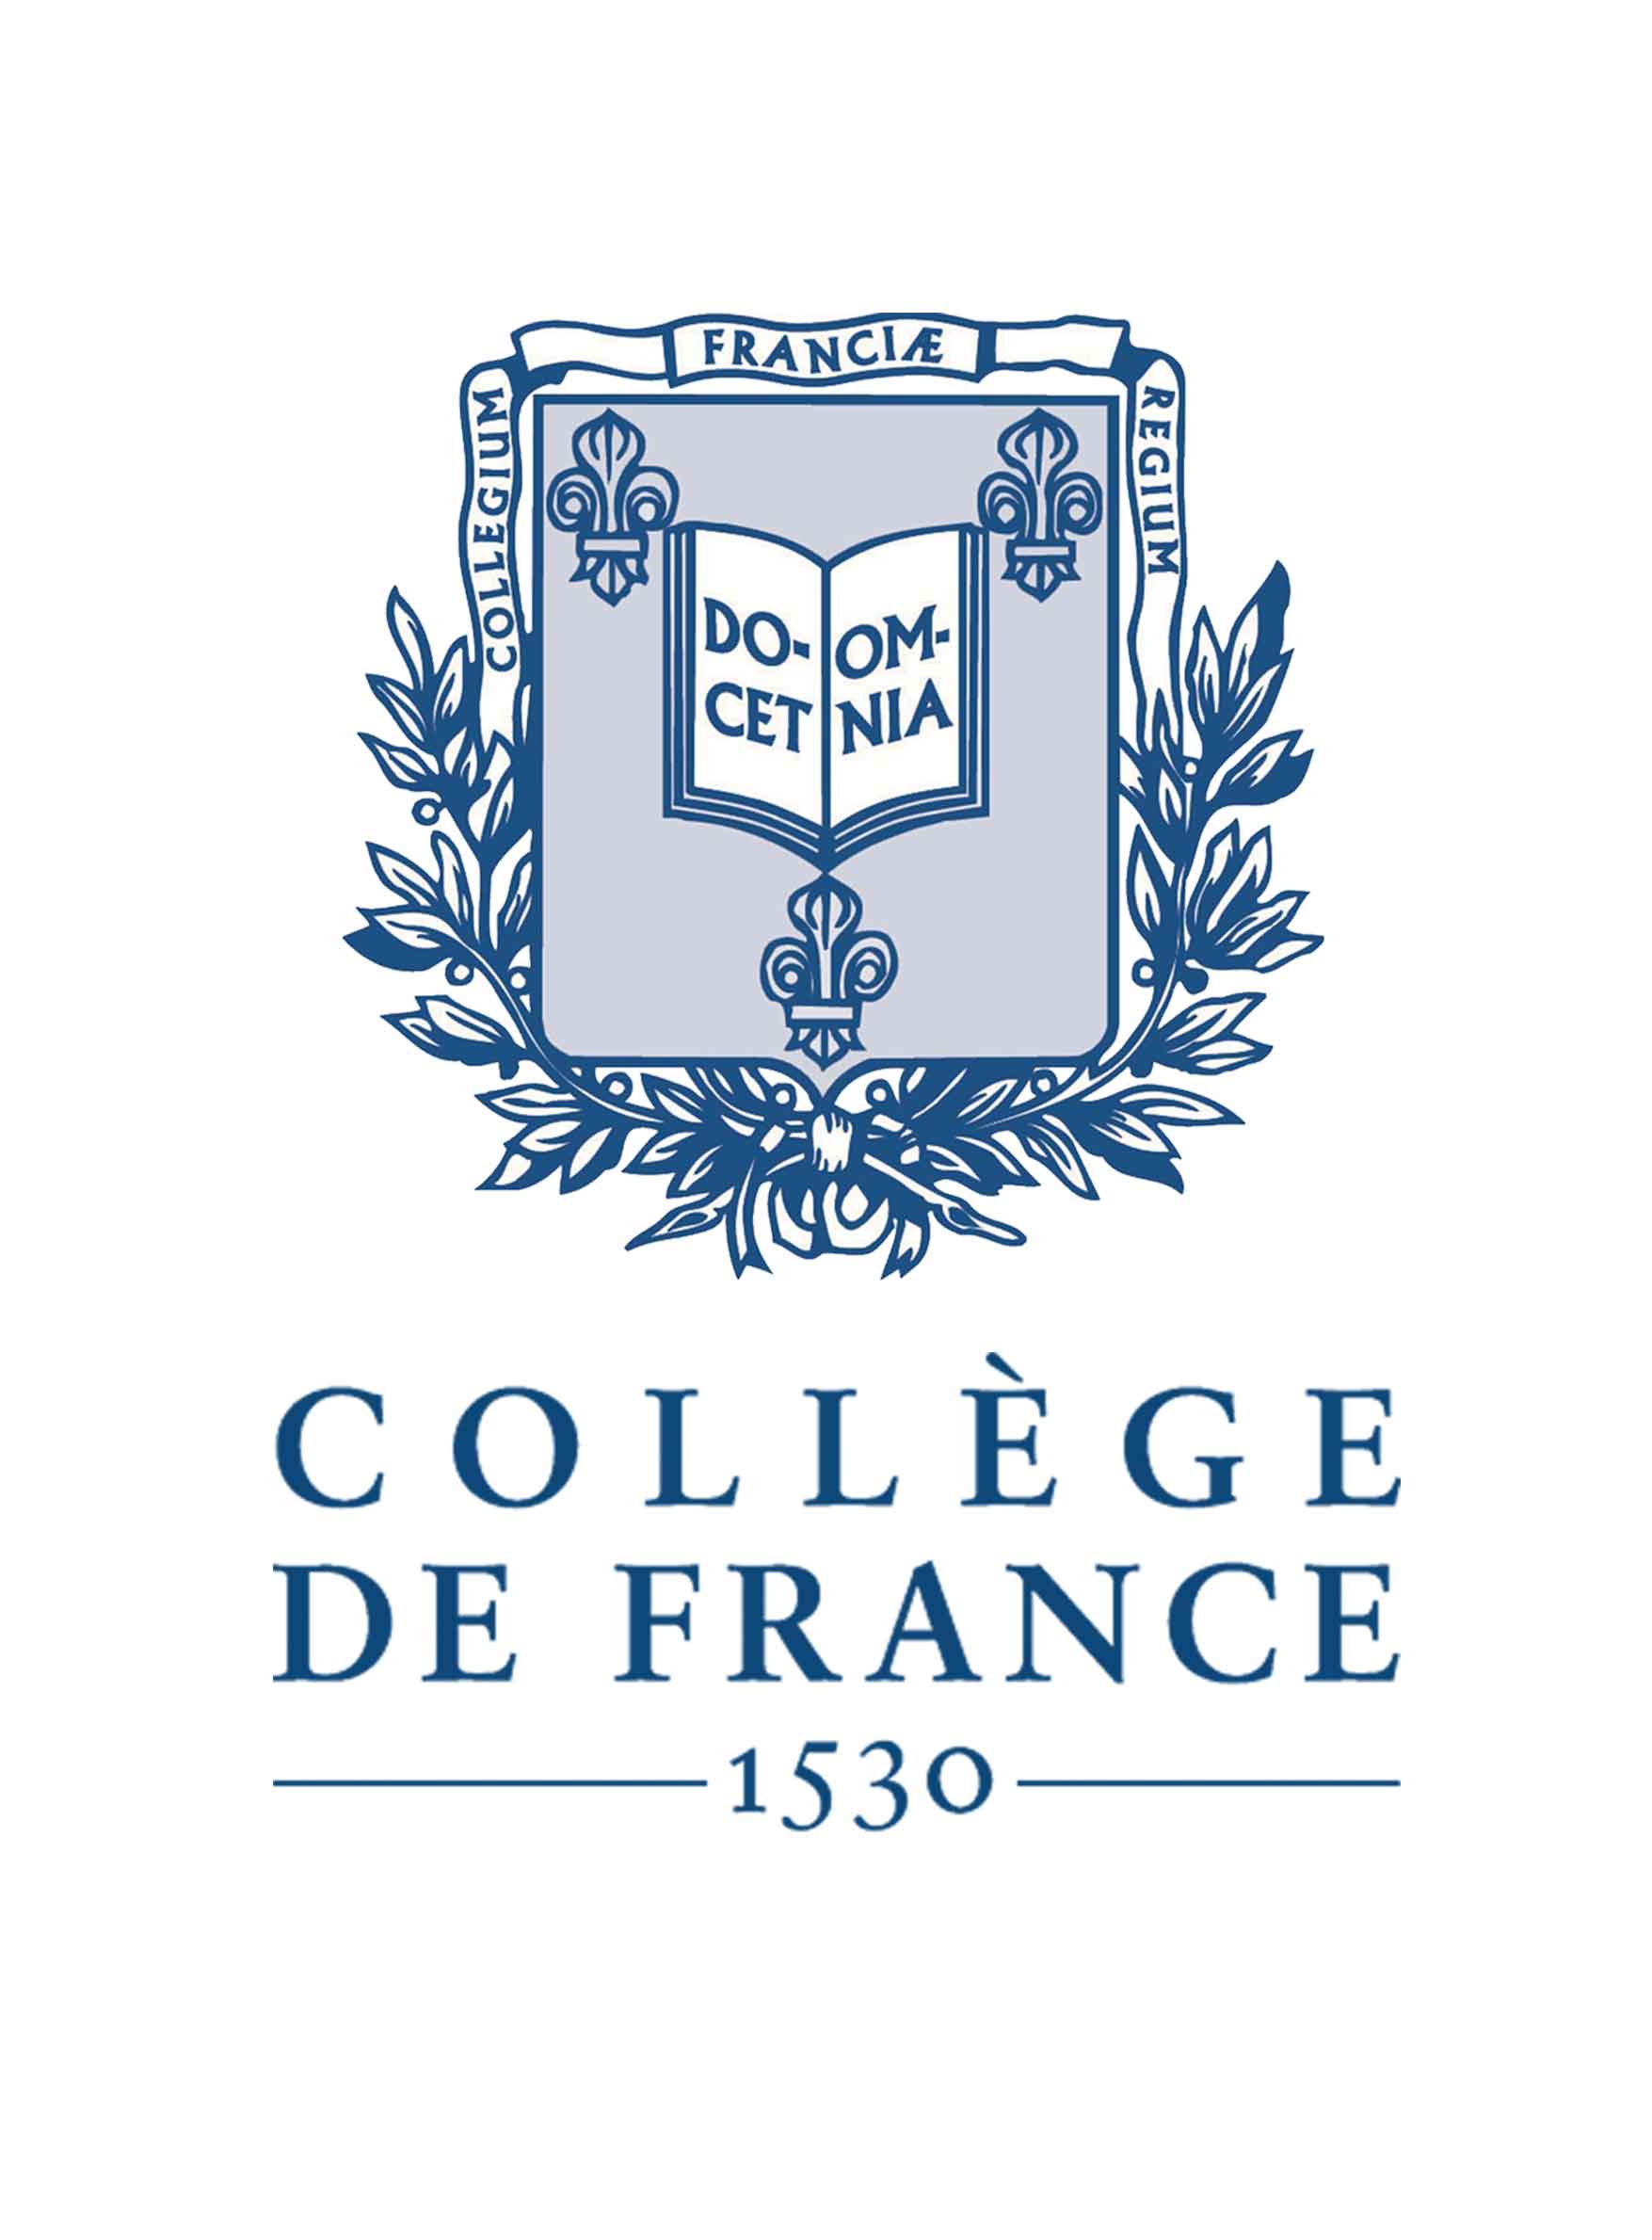 Logo Collège de France - 1530 : représentation du sceau du Collège de France avec l'inscription "1530", sur fond transparent.